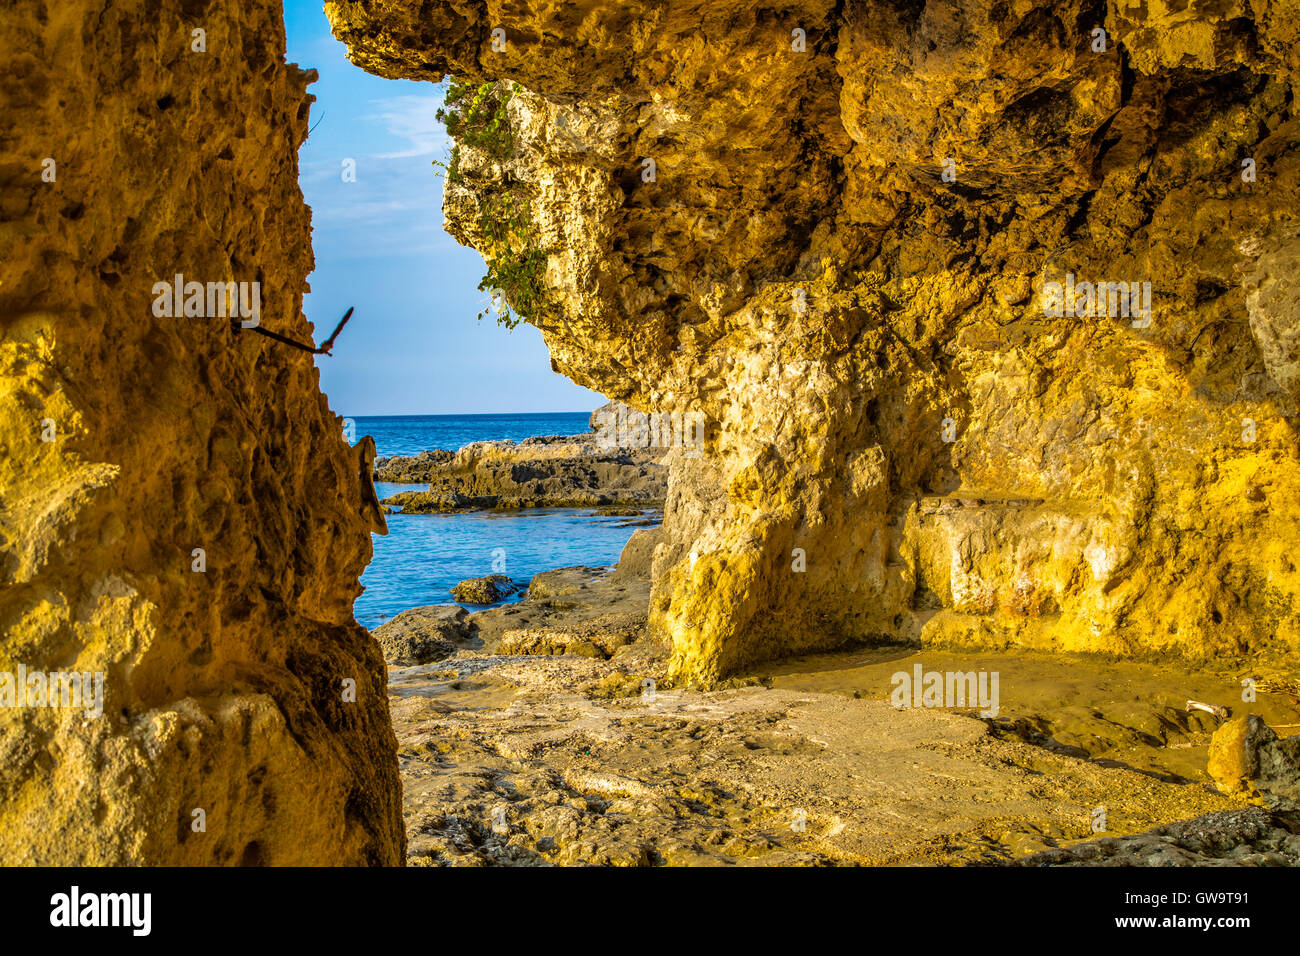 Caletta rocciosa sulle spiagge della costa adriatica in Puglia, Italia Foto Stock